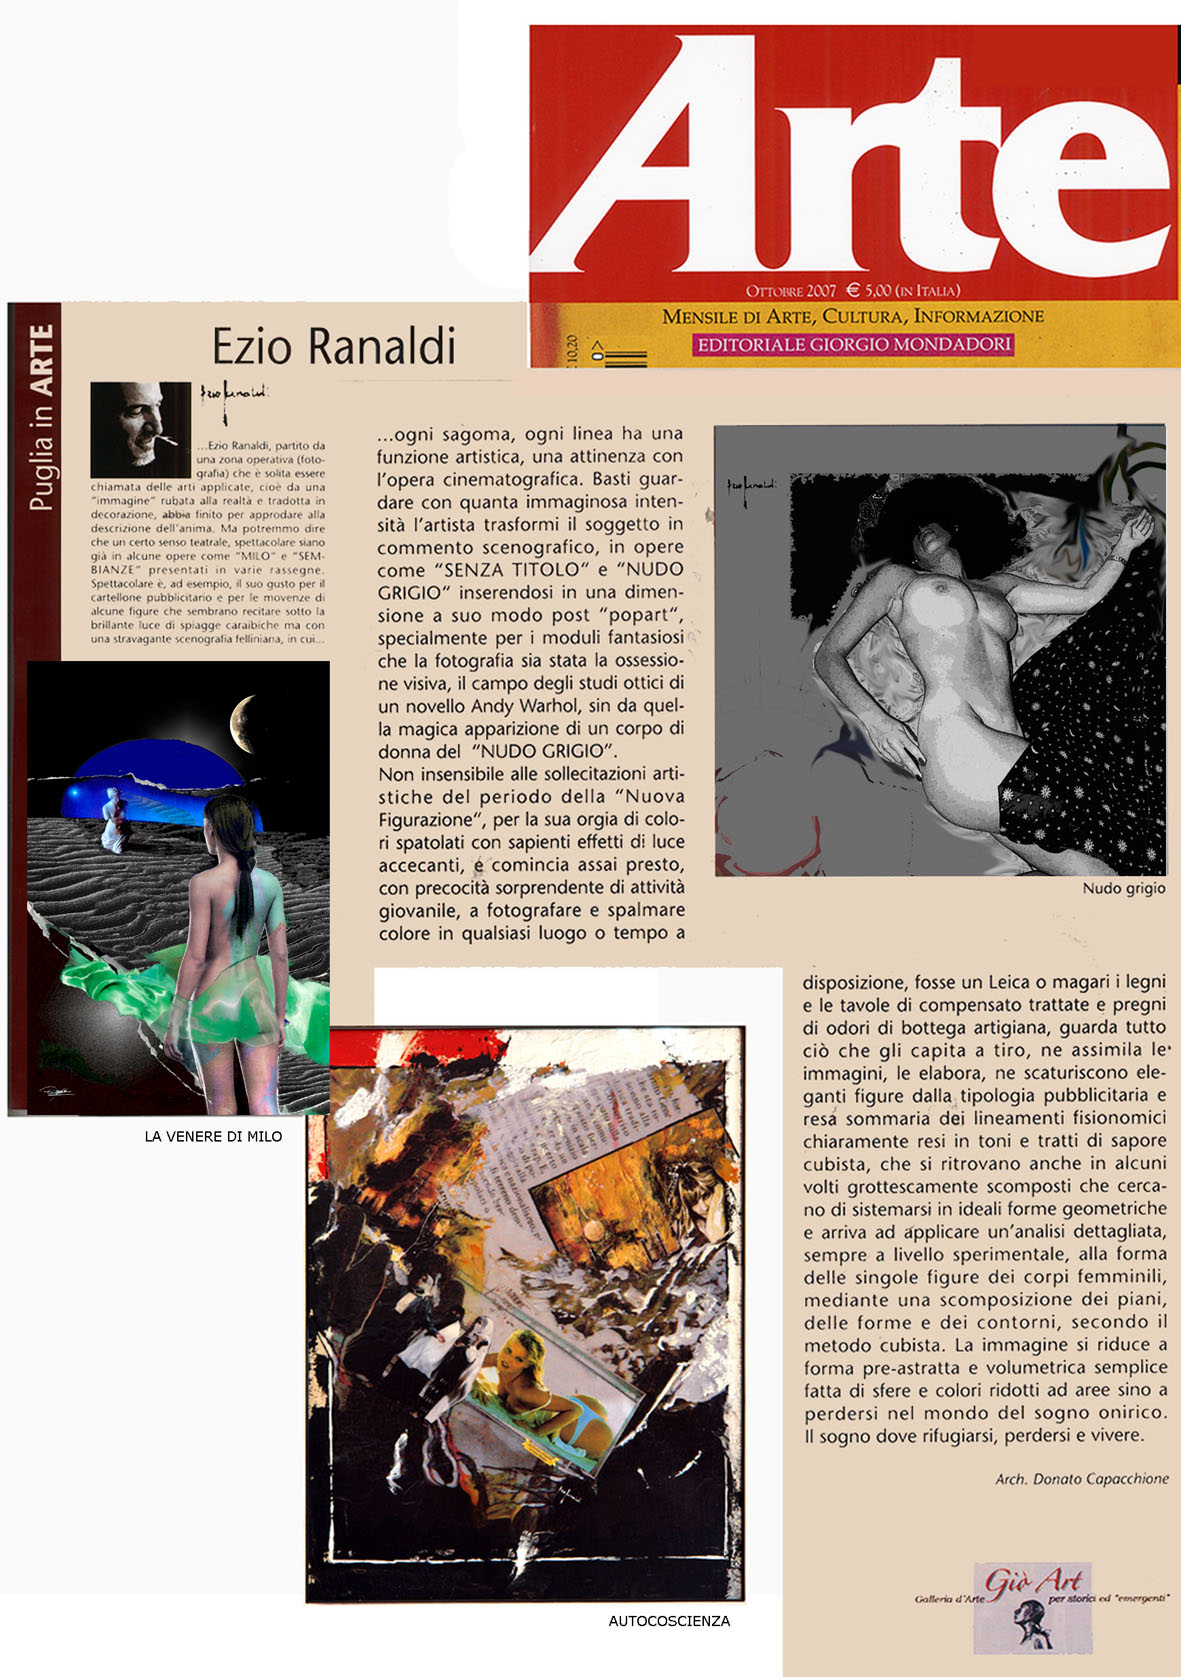 Ezio Ranaldi – Arte puglia in arte 2007 copia